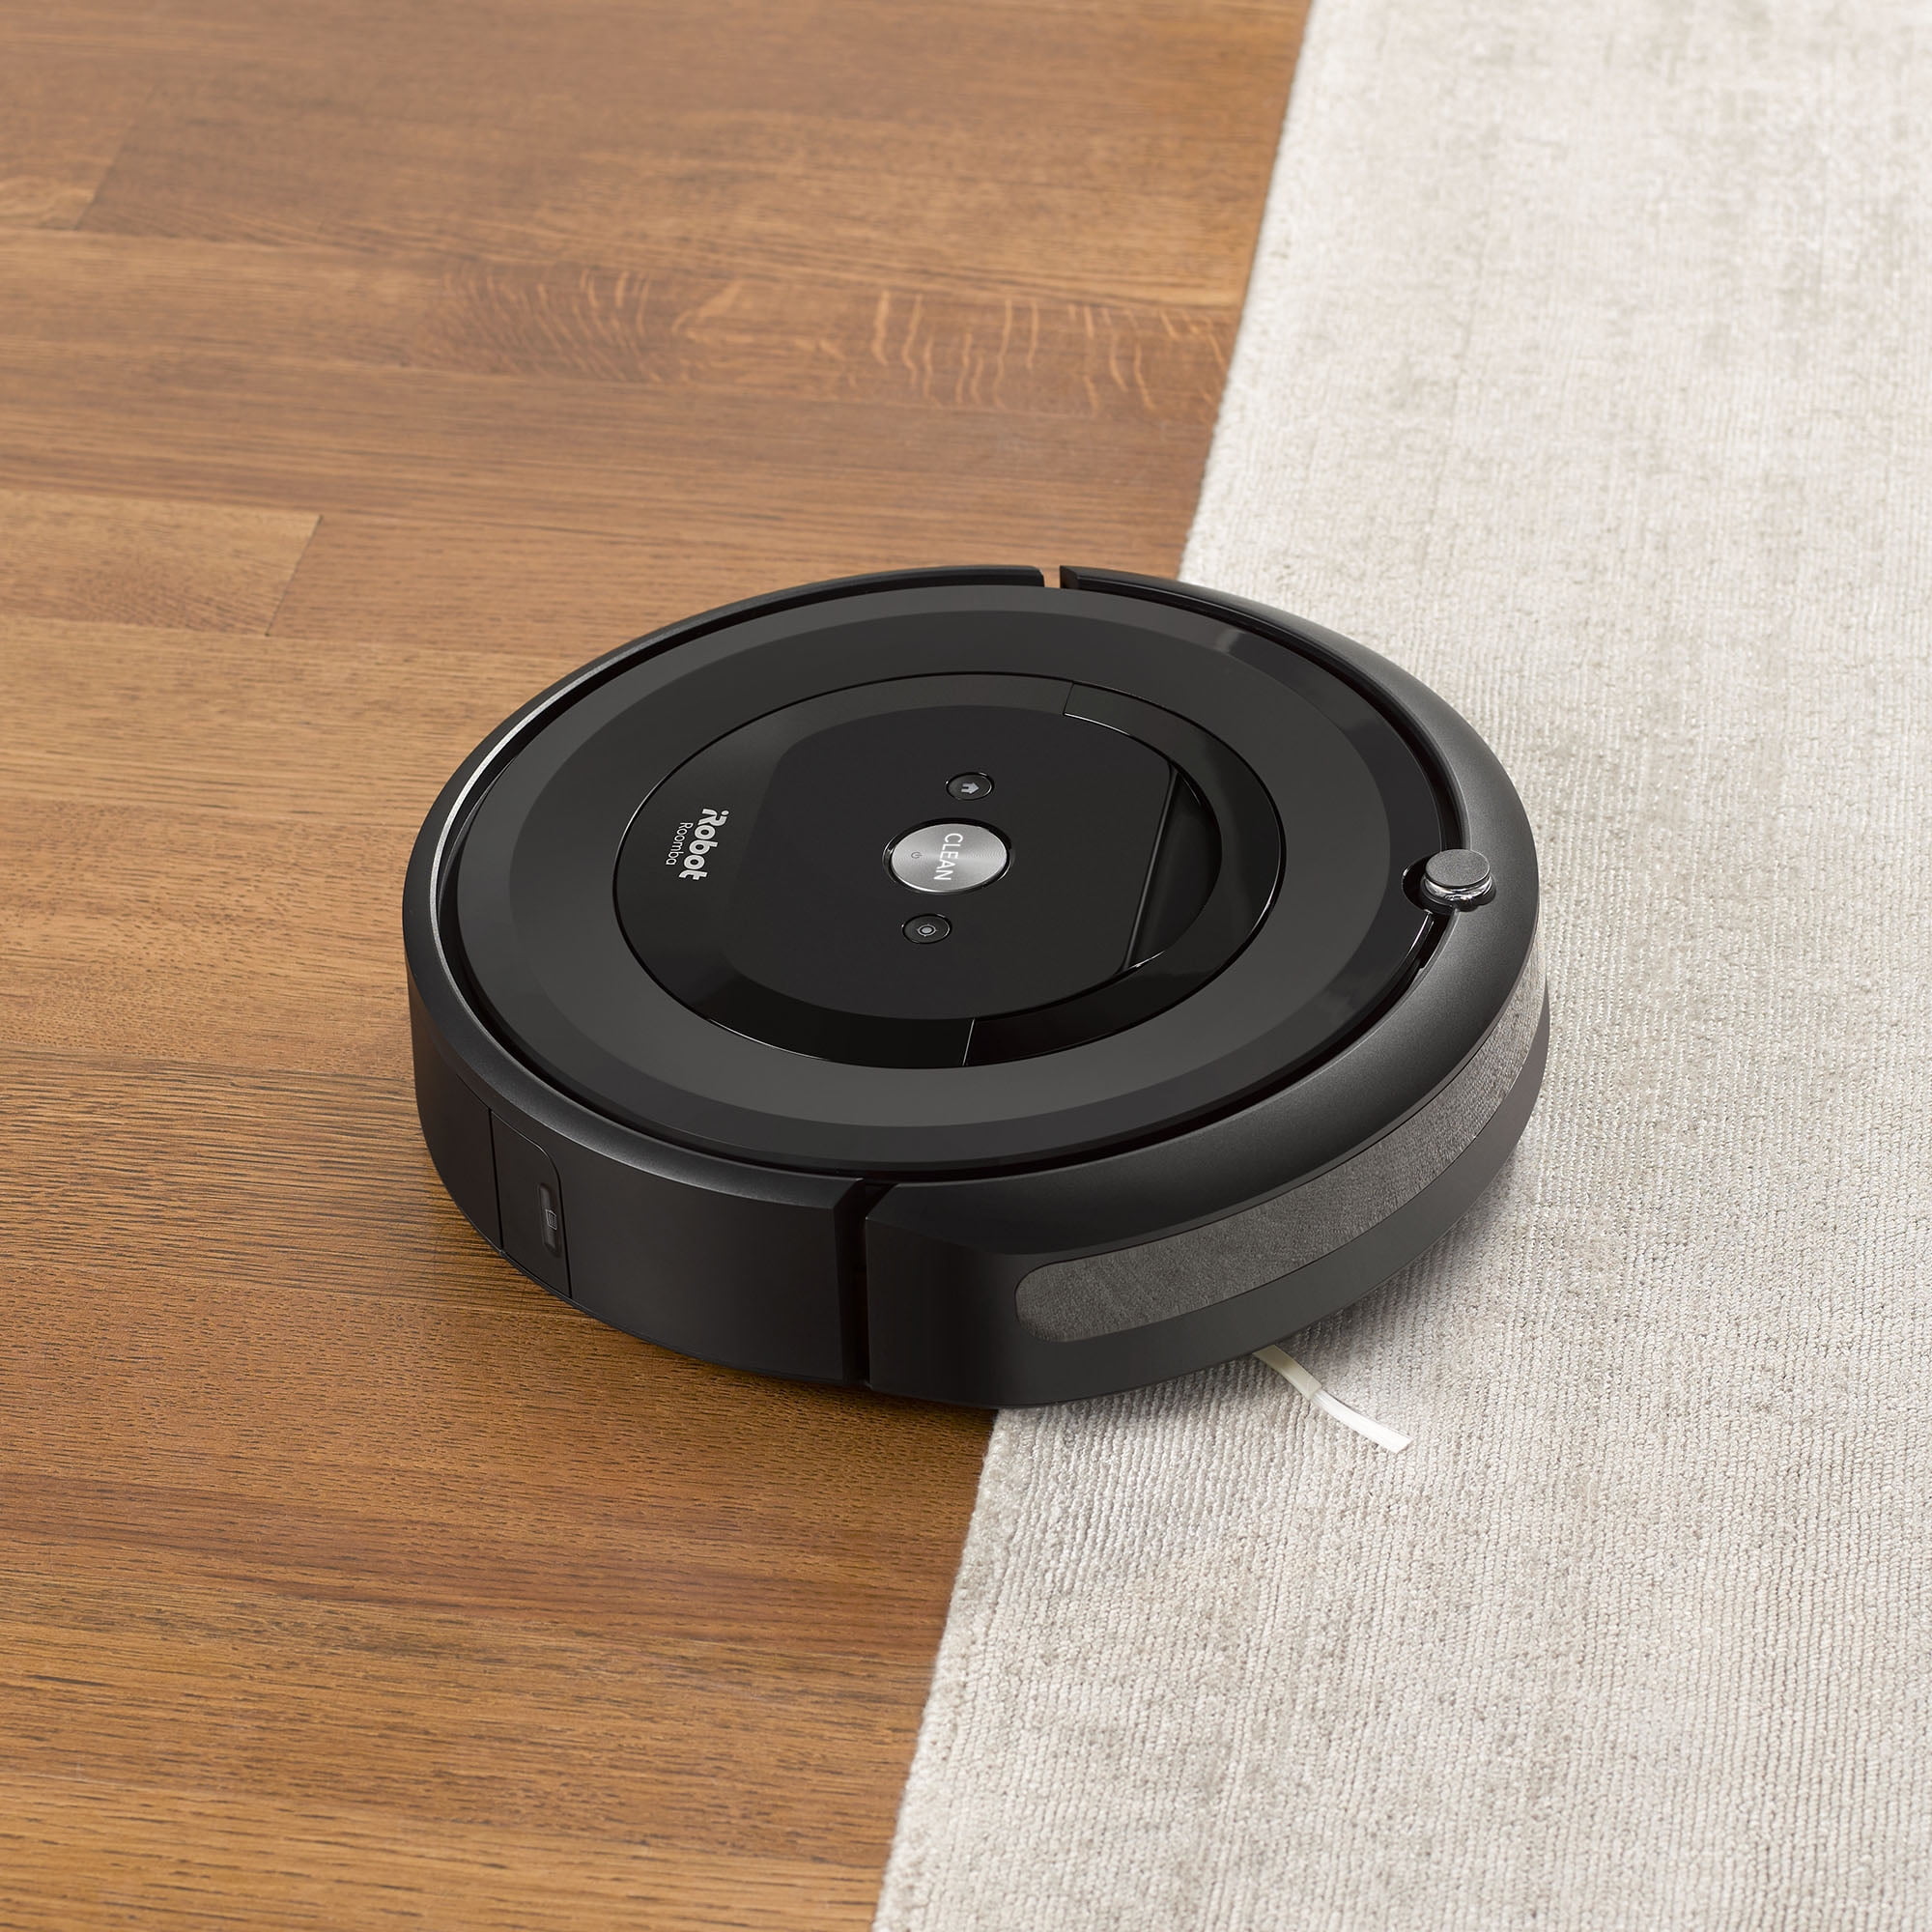 iRobot Roomba, Robot Aspiradora Inteligente Roomba e6 - e6130 con Conexión  Wi-Fi, Serie e6 - e6130, Contenido: 1… - Multicleaners